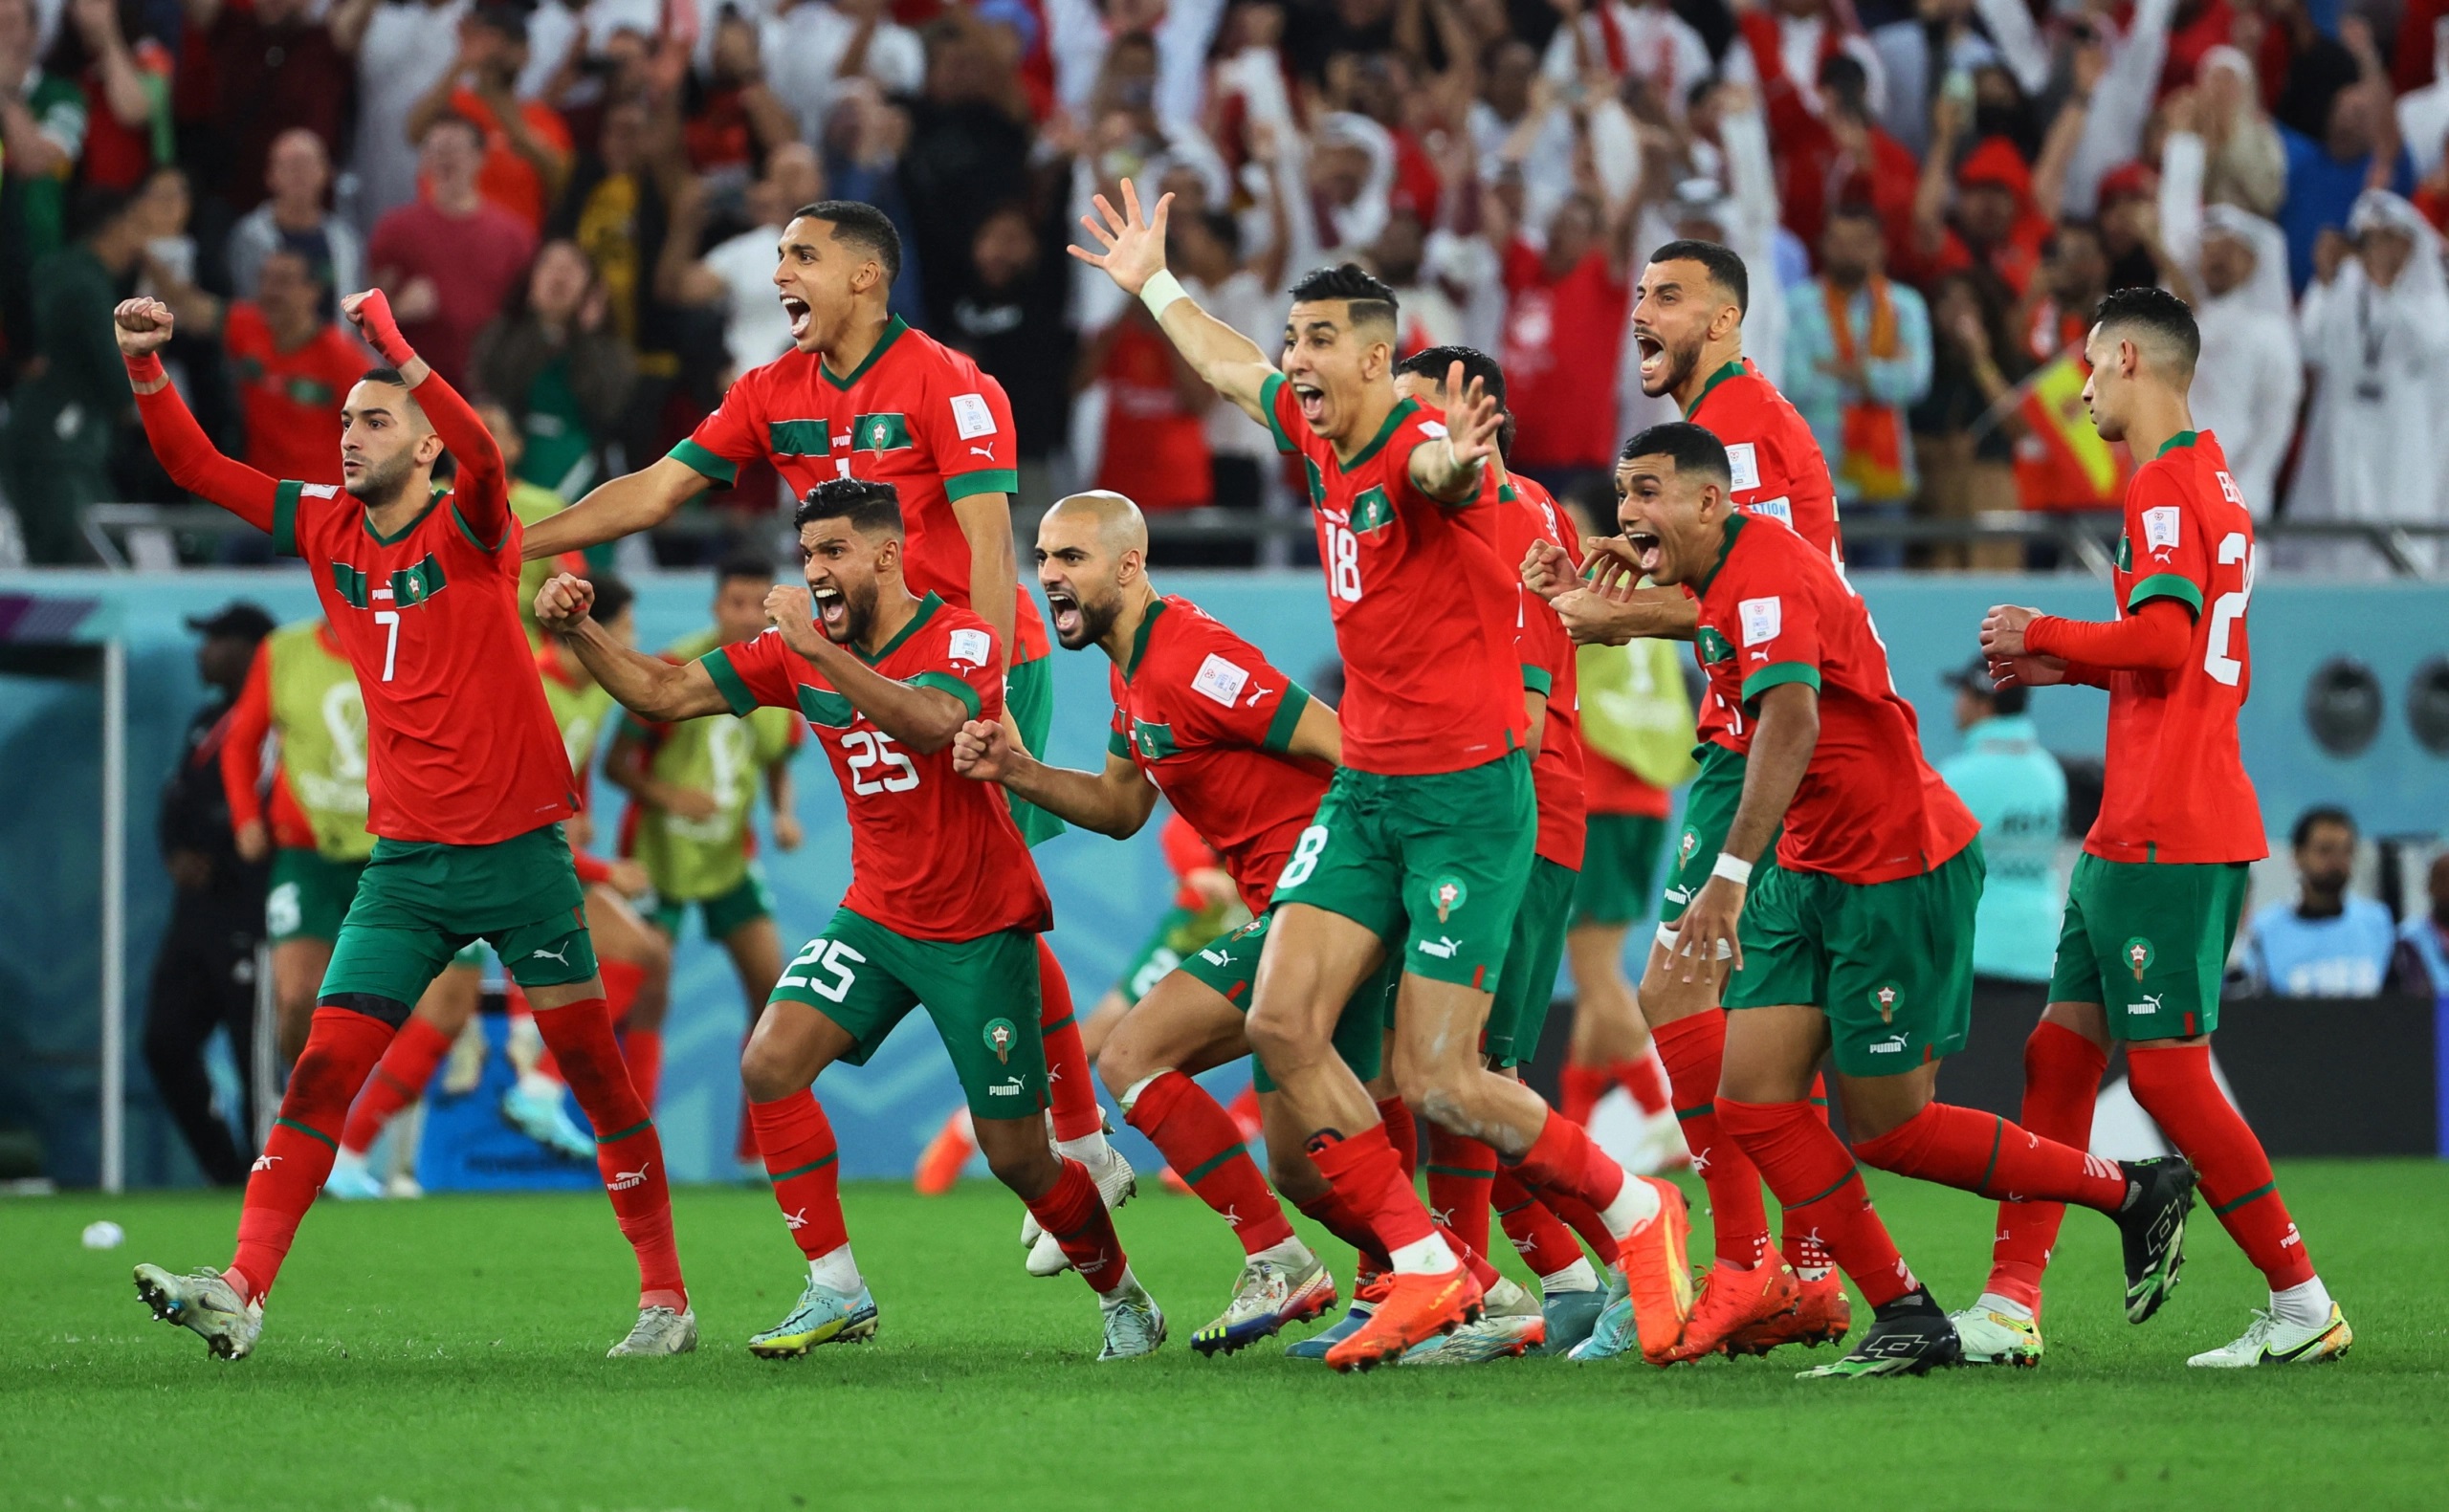  Mundial: Marruecos orgullo y abanderado de todo el mundo árabe